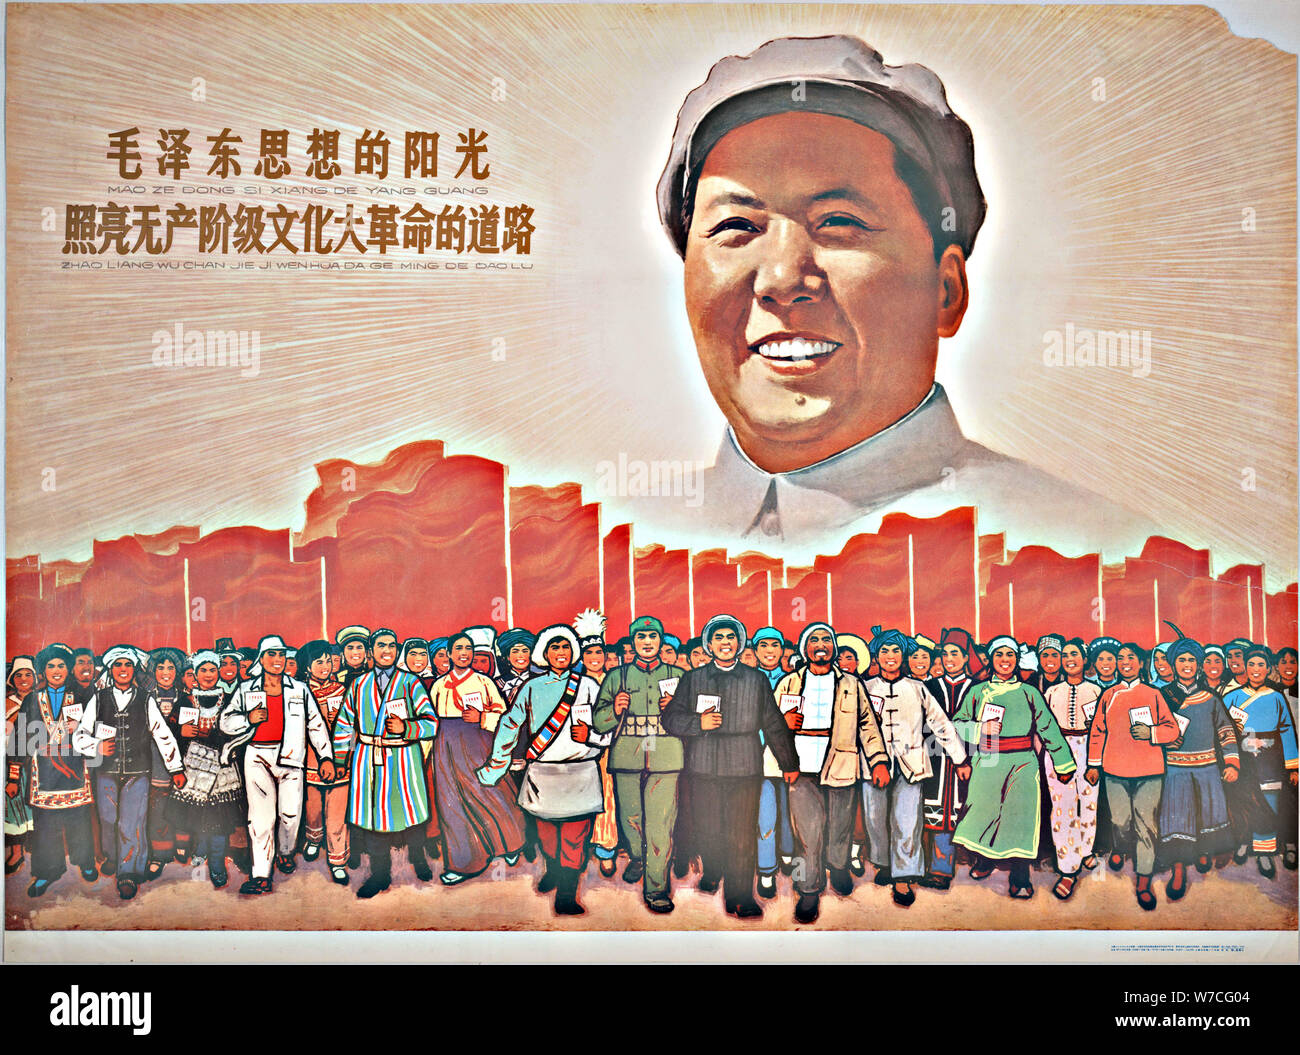 Le soleil de la pensée de Mao Zedong illumine le chemin de la Grande Révolution culturelle prolétarienne Banque D'Images